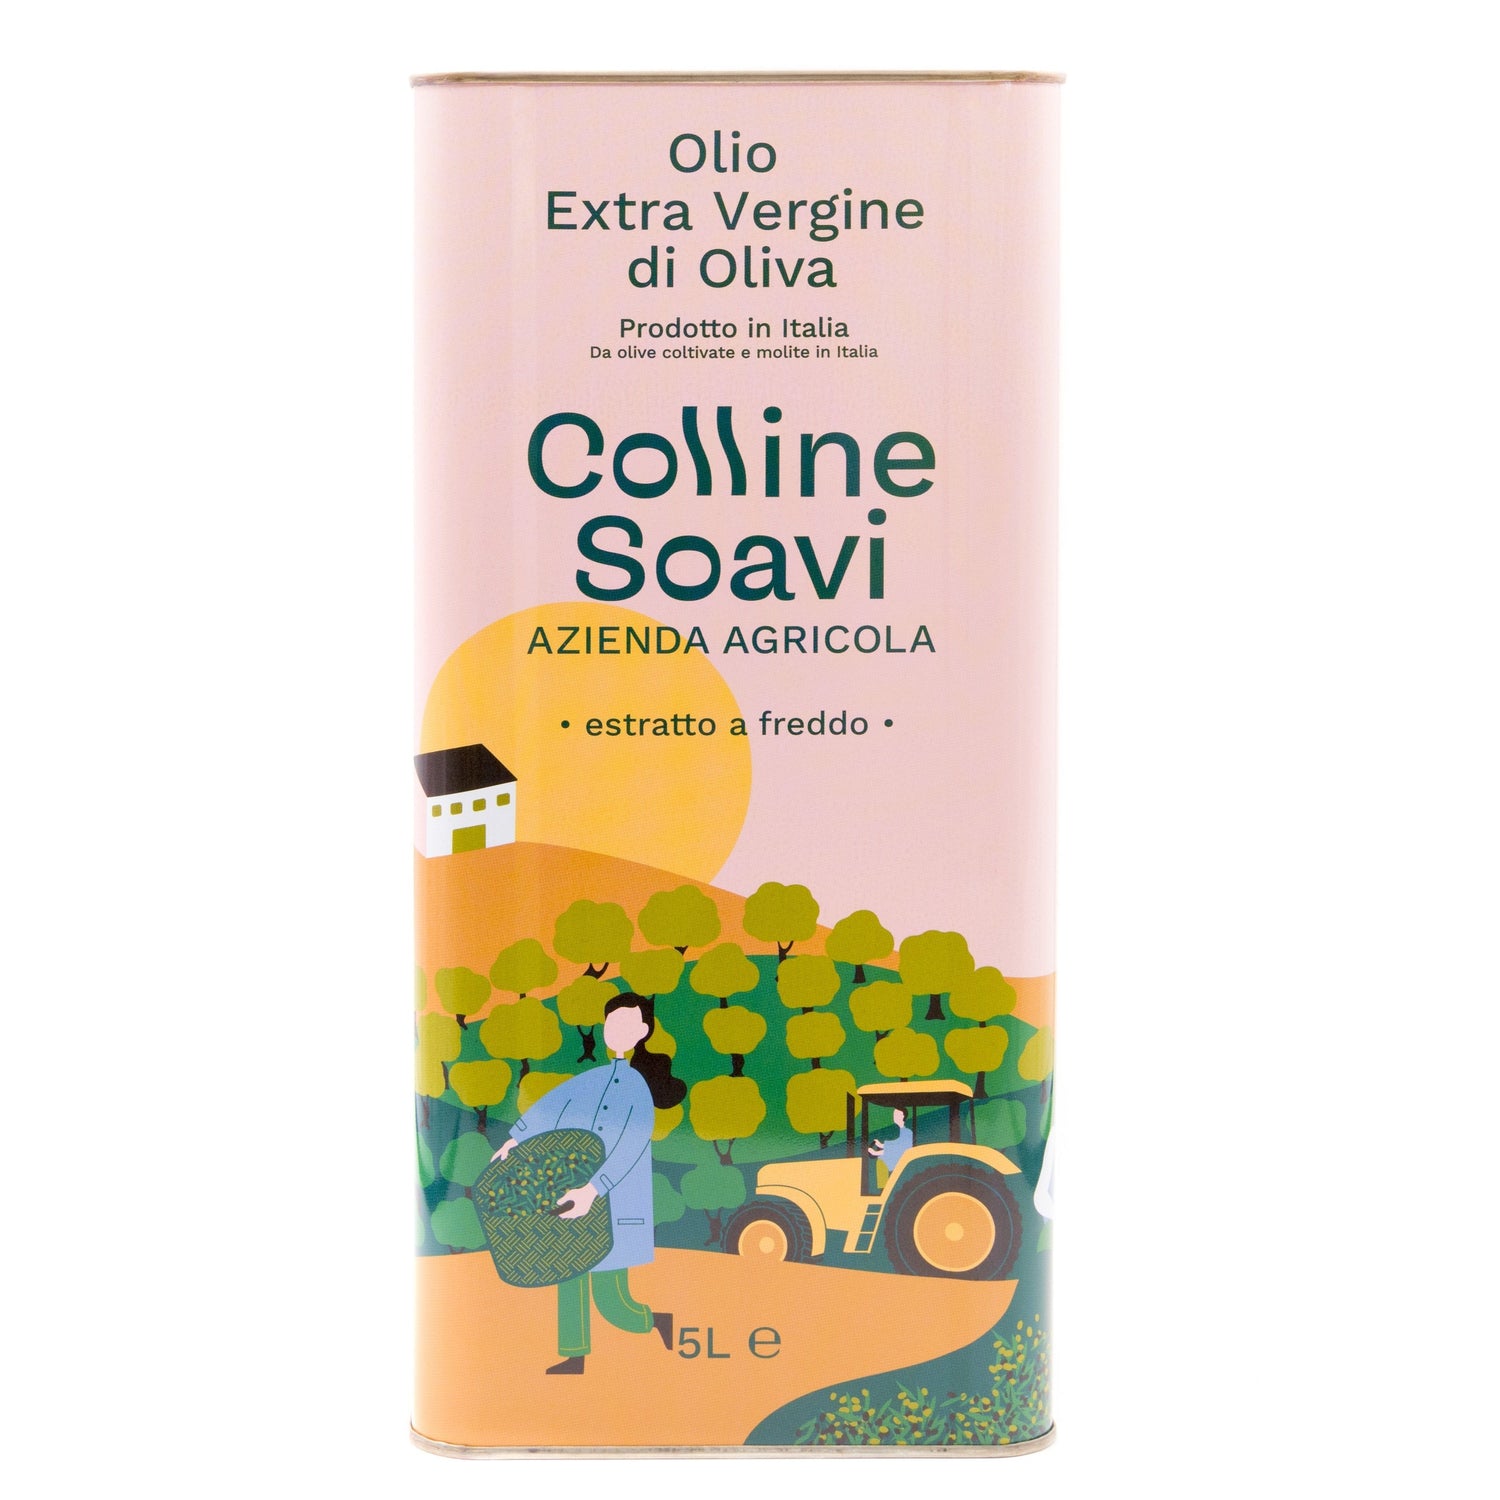 Olio Extravergine di Oliva Colline Soavi, Latta 5L - 2023/24